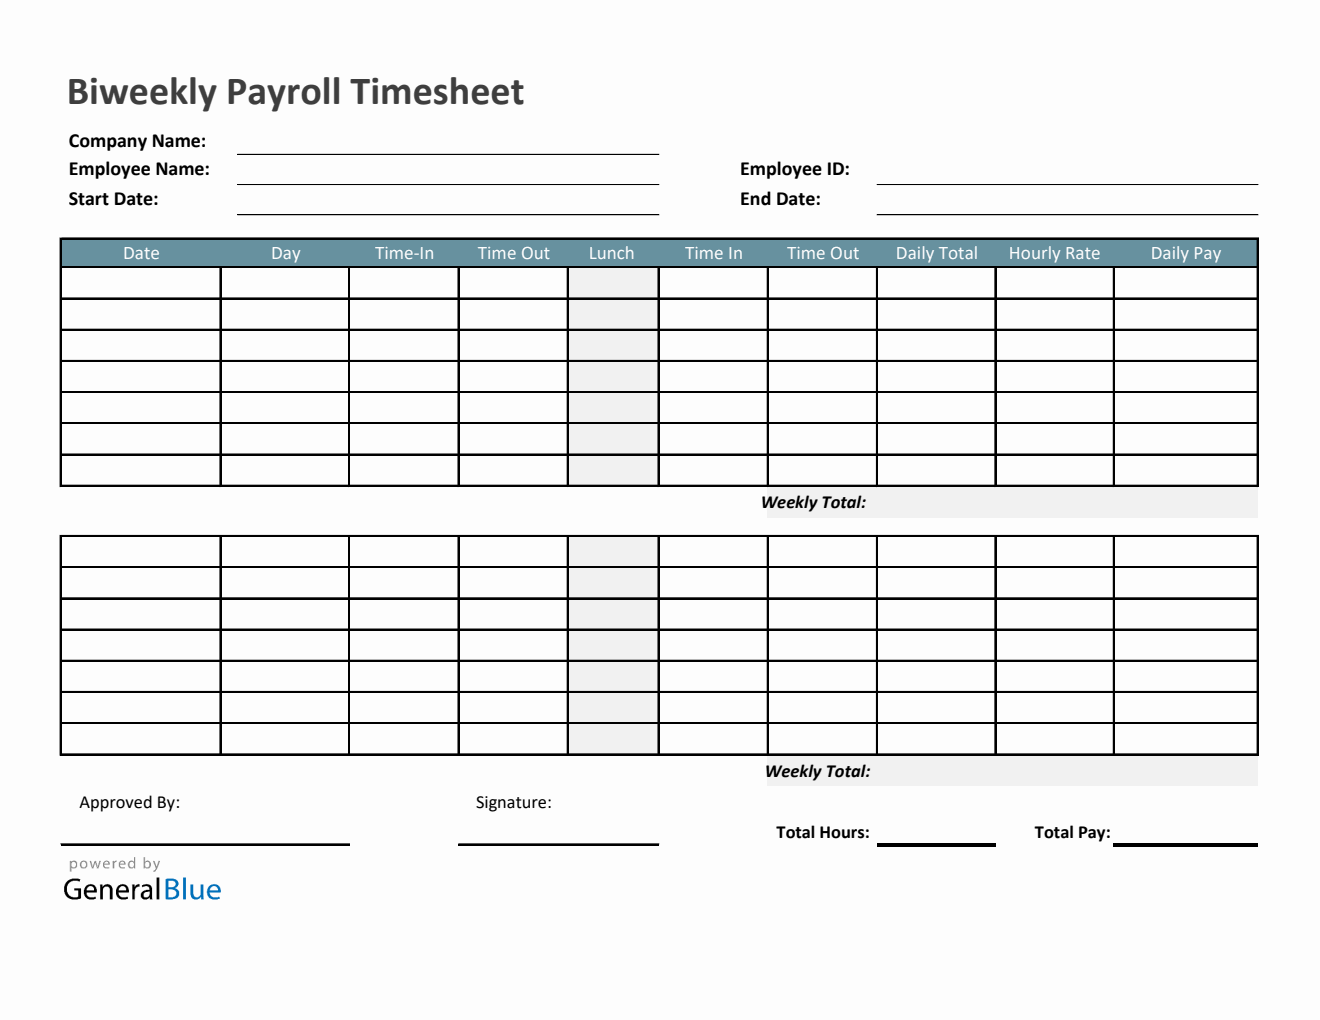 Biweekly Payroll Timesheet in Excel